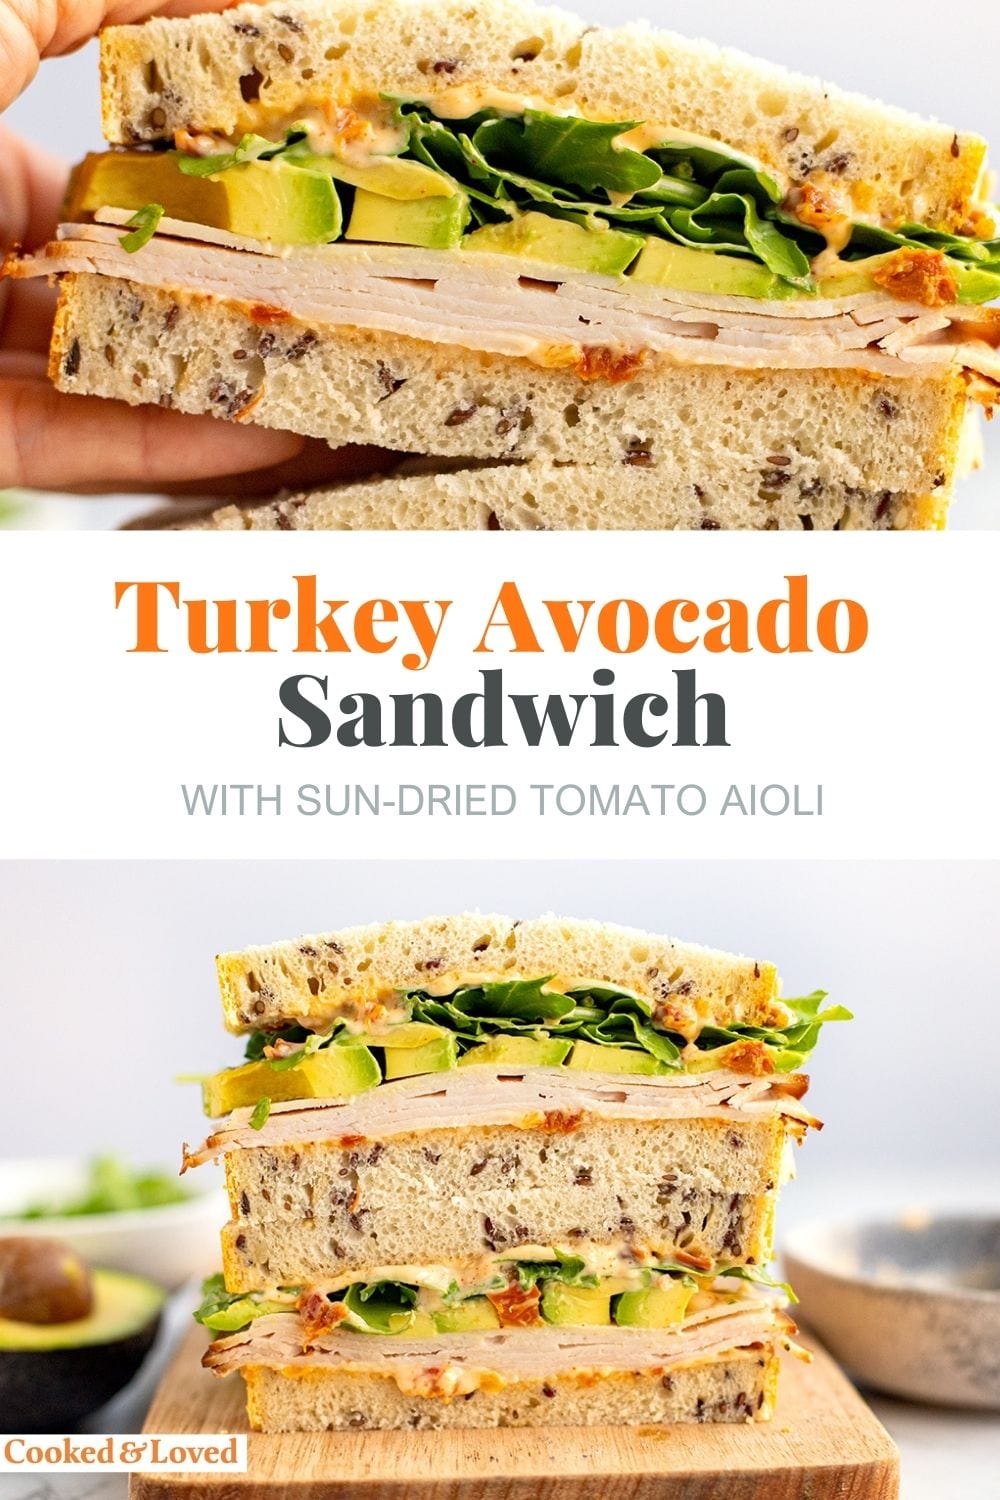 Avocado Turkey Sandwich With Sun-Dried Tomato Aioli